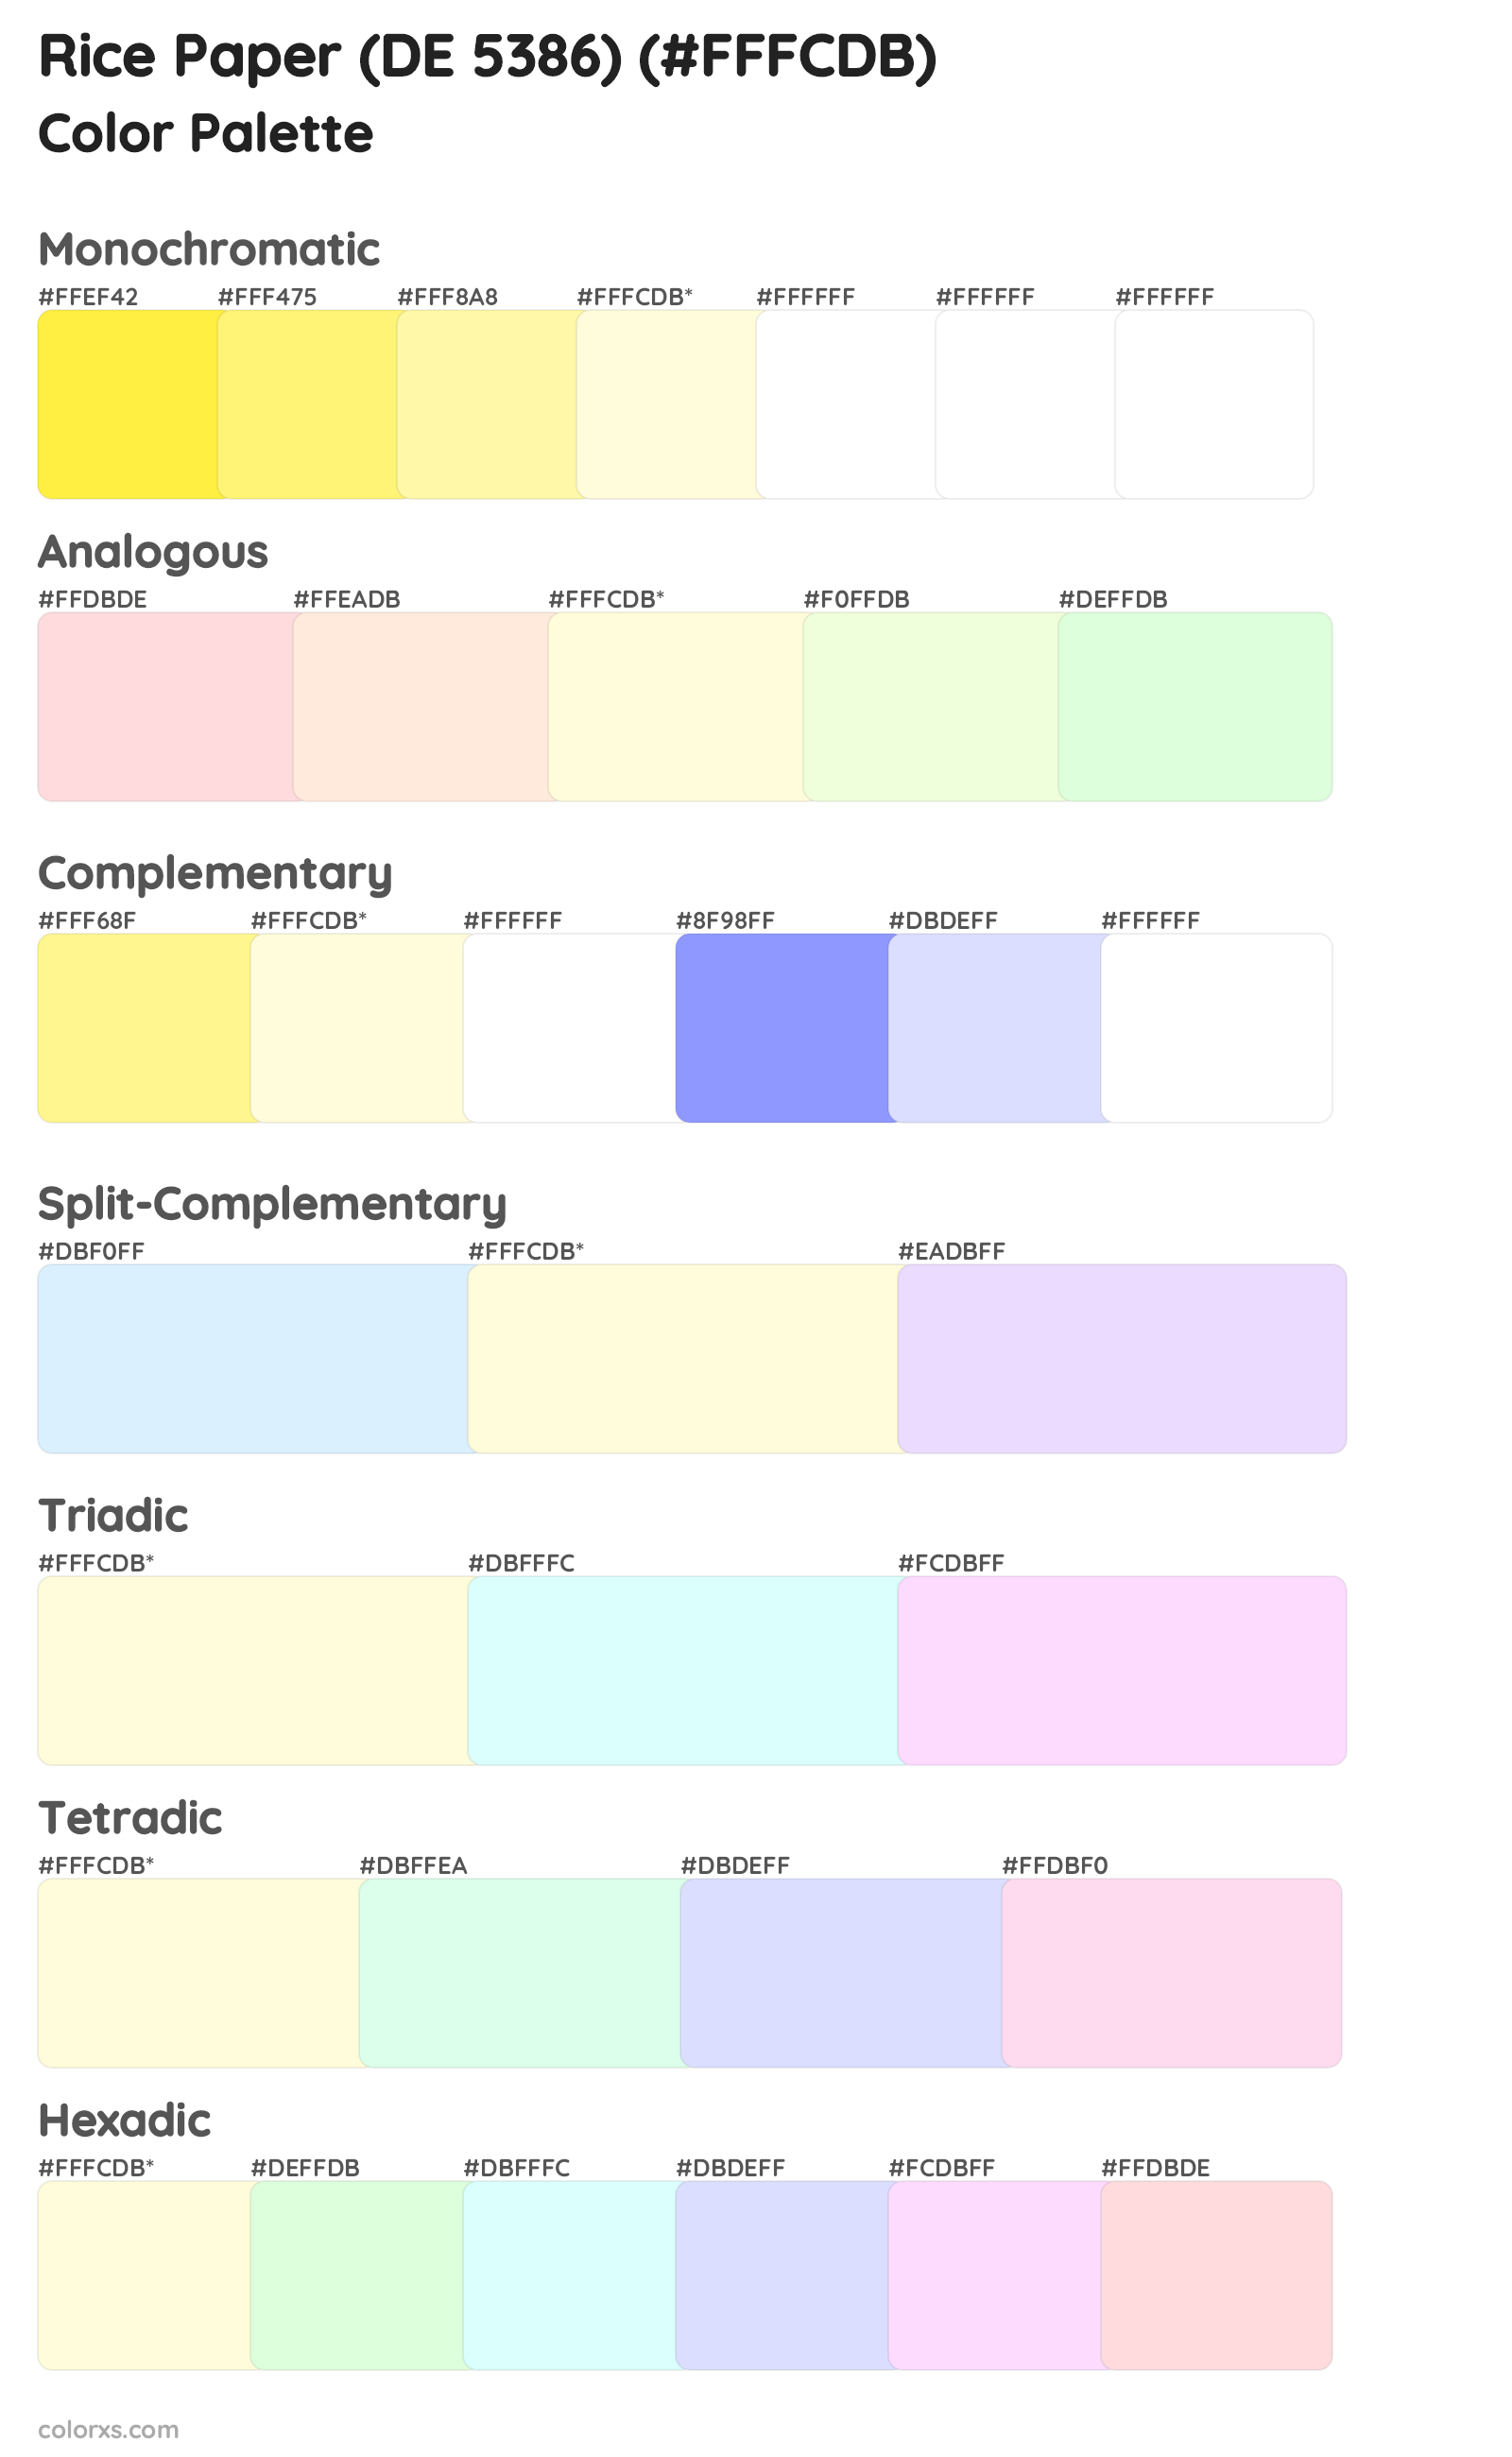 Rice Paper (DE 5386) Color Scheme Palettes